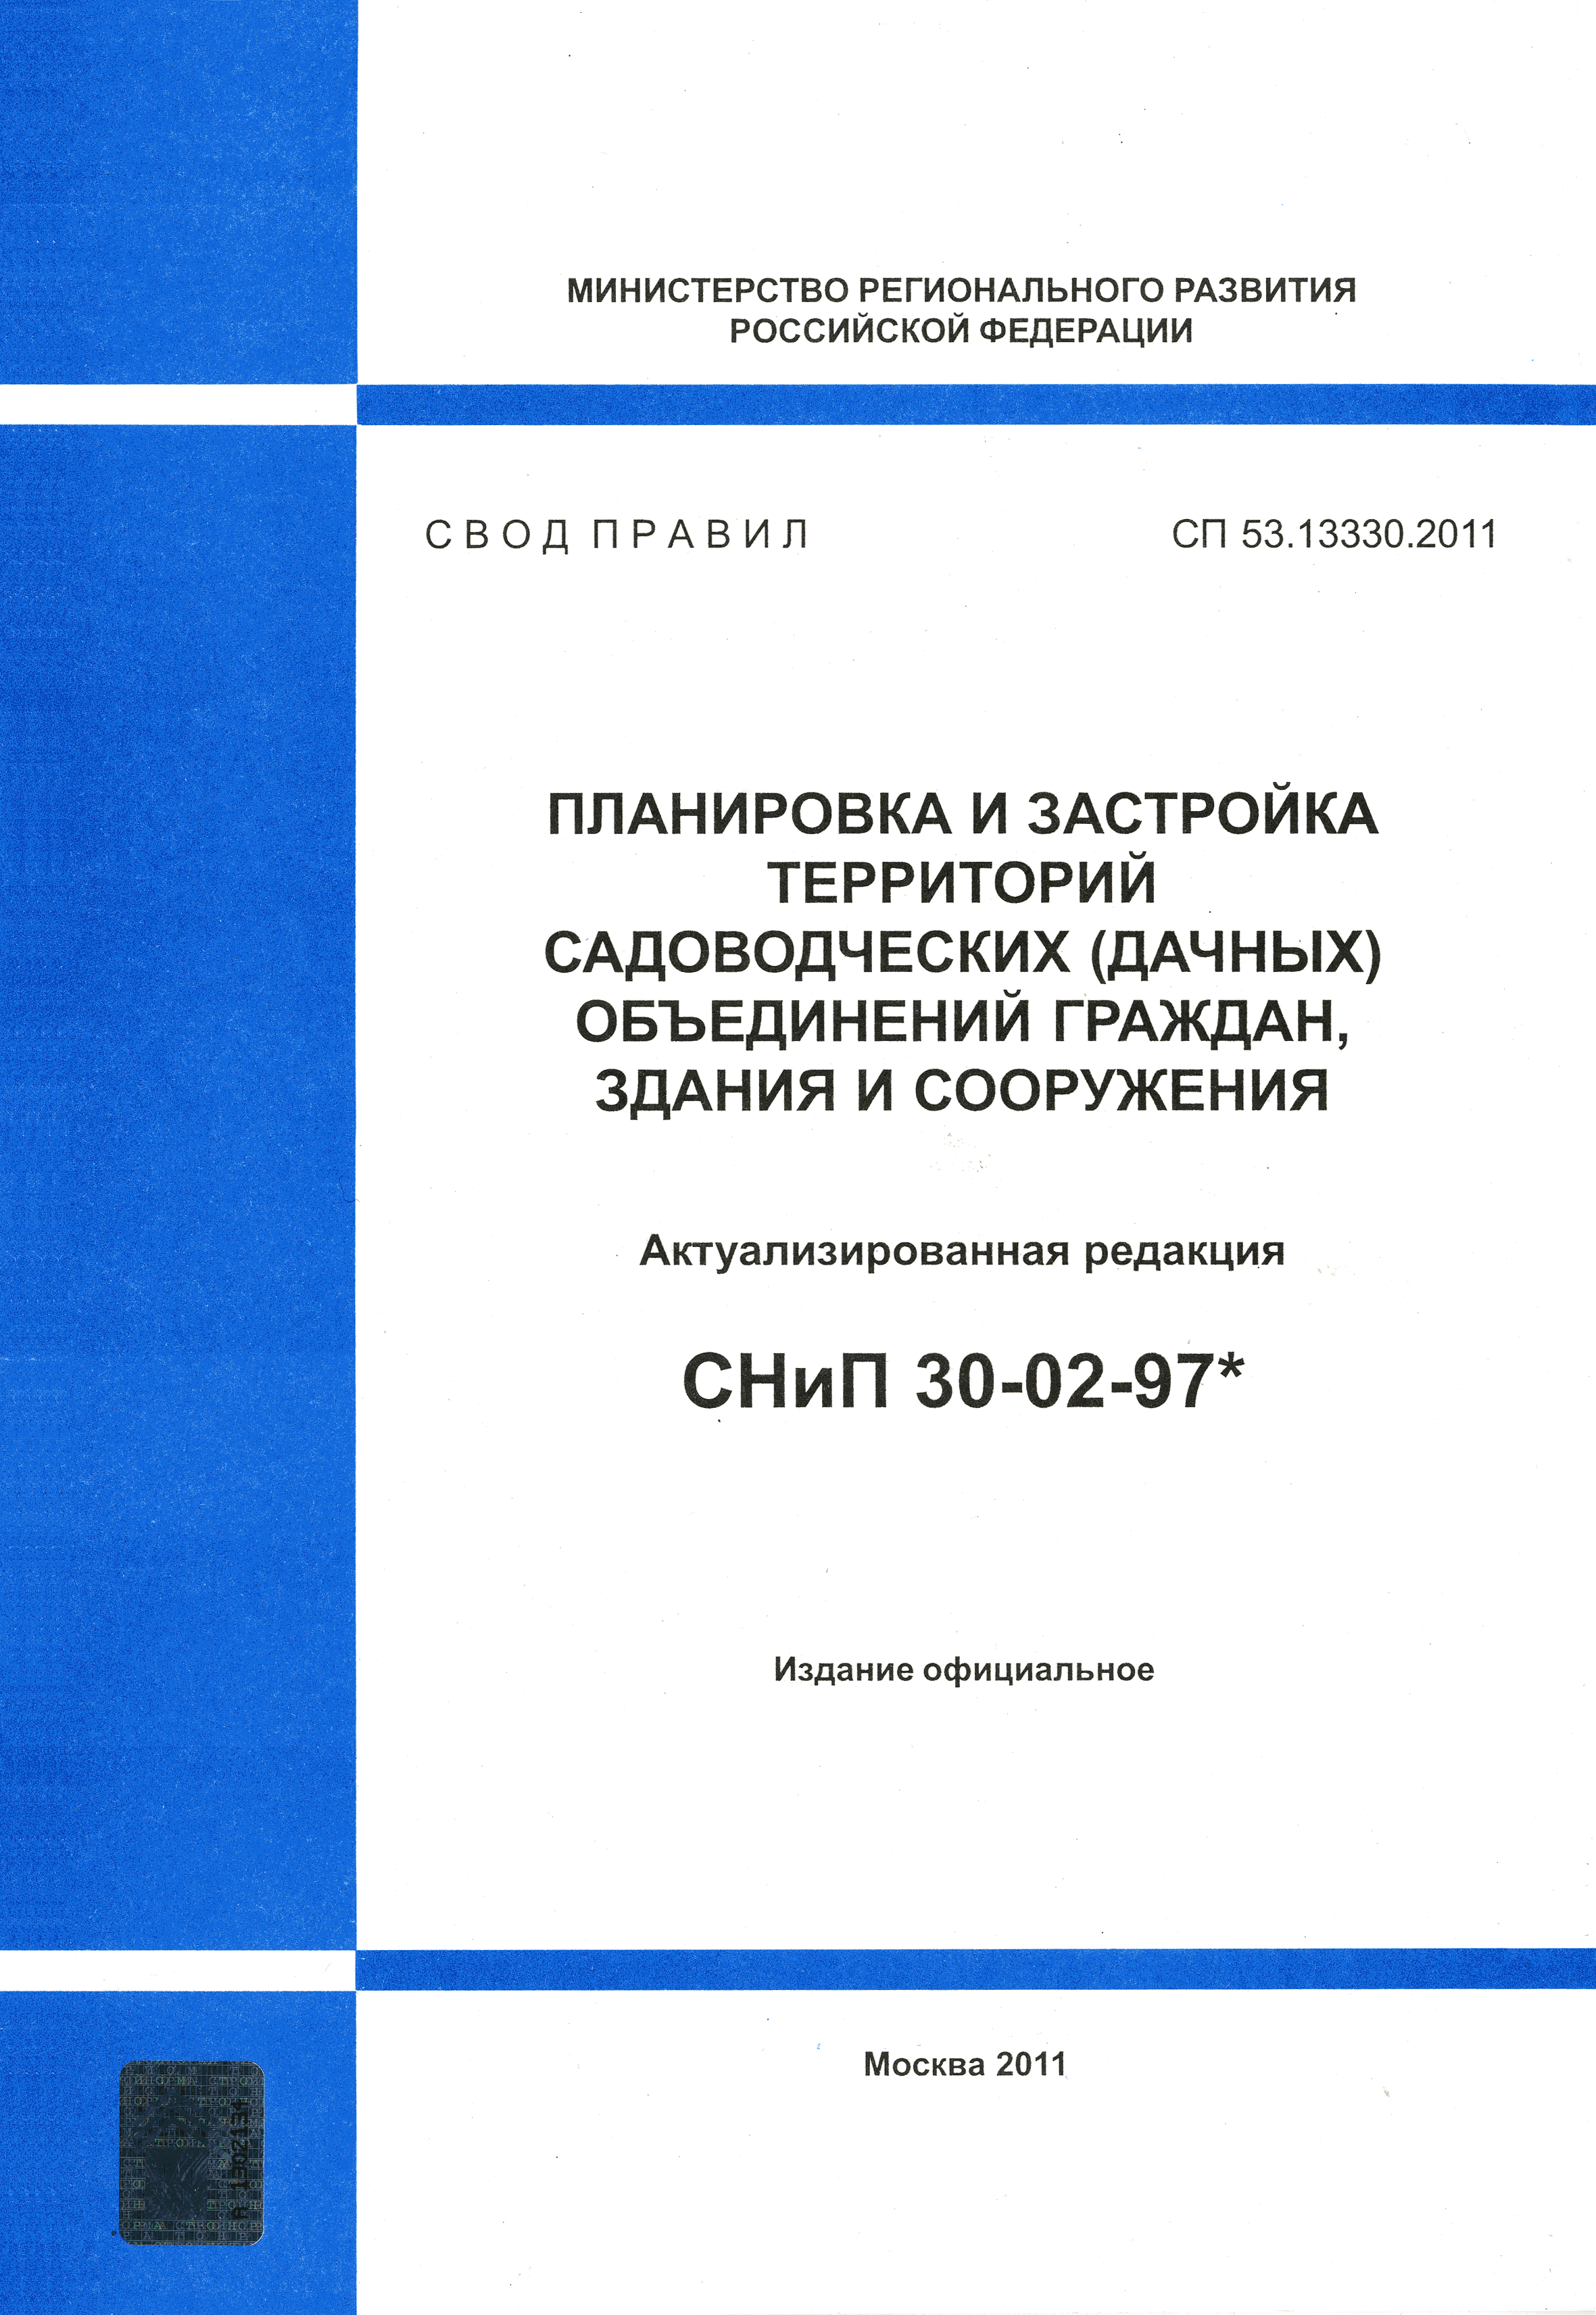 СП 53.13330.2011